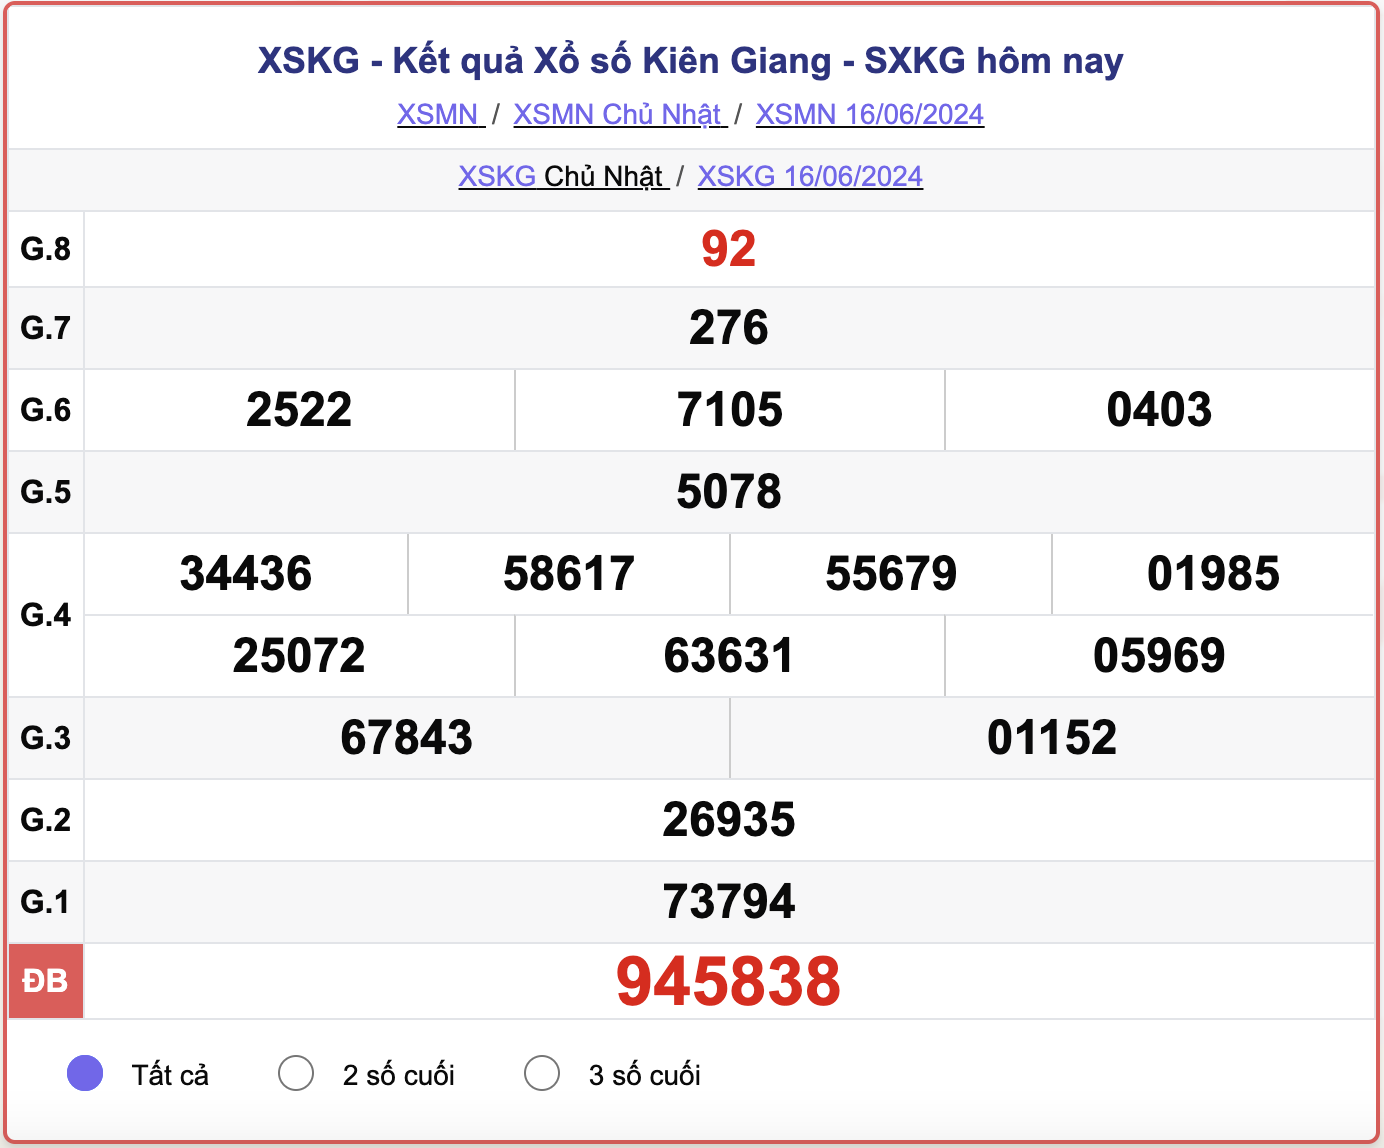 XSKG 16/6, kết quả xổ số Kiên Giang hôm nay 16/6/2024.